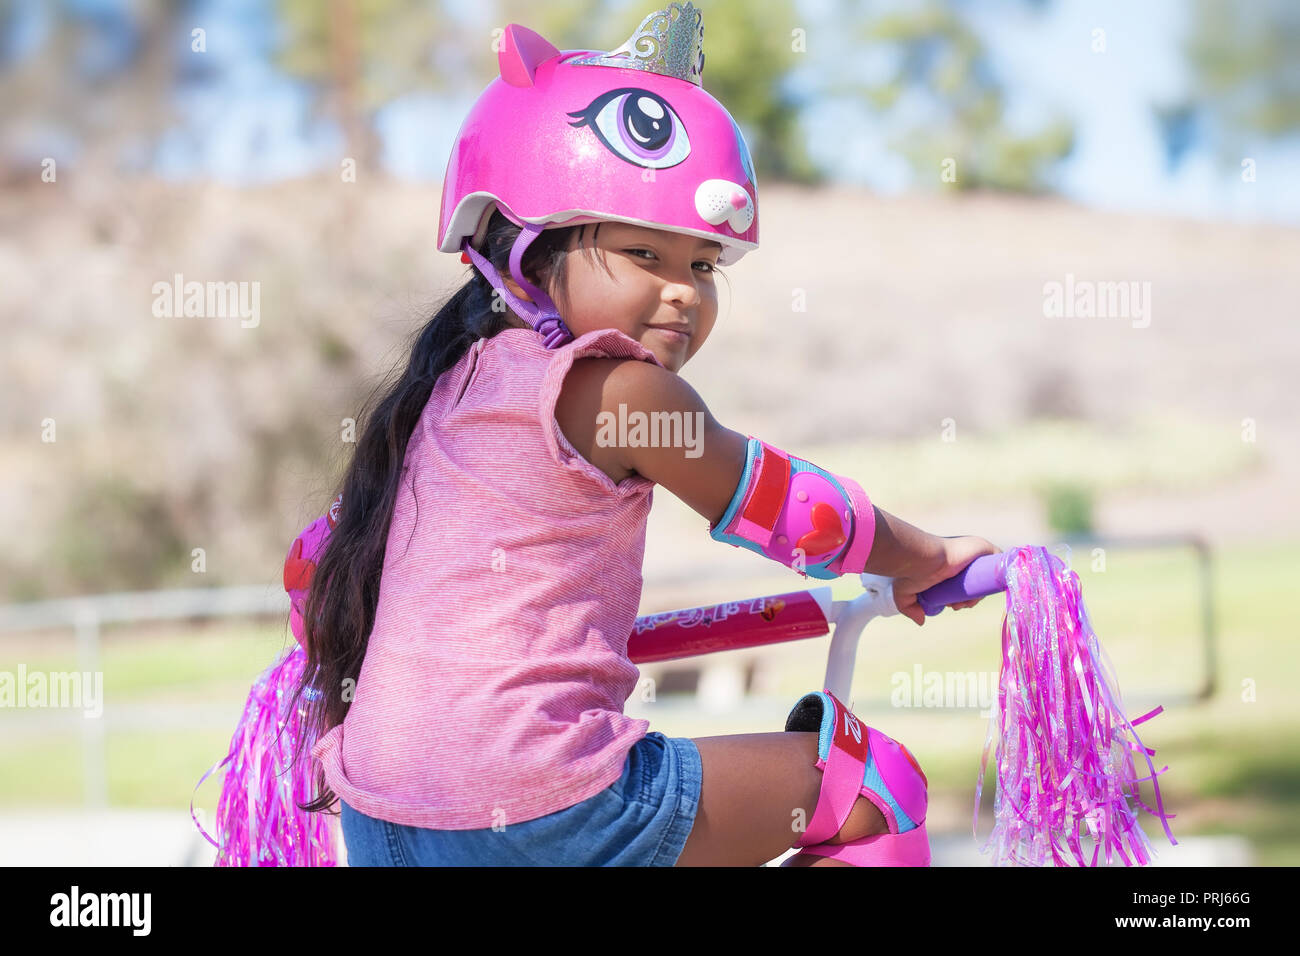 5 anno vecchia ragazza ottenere pronto per cavalcare lontano nel suo moto rosa, indossando il casco protettivo e ginocchiere in un parco con le colline Foto Stock